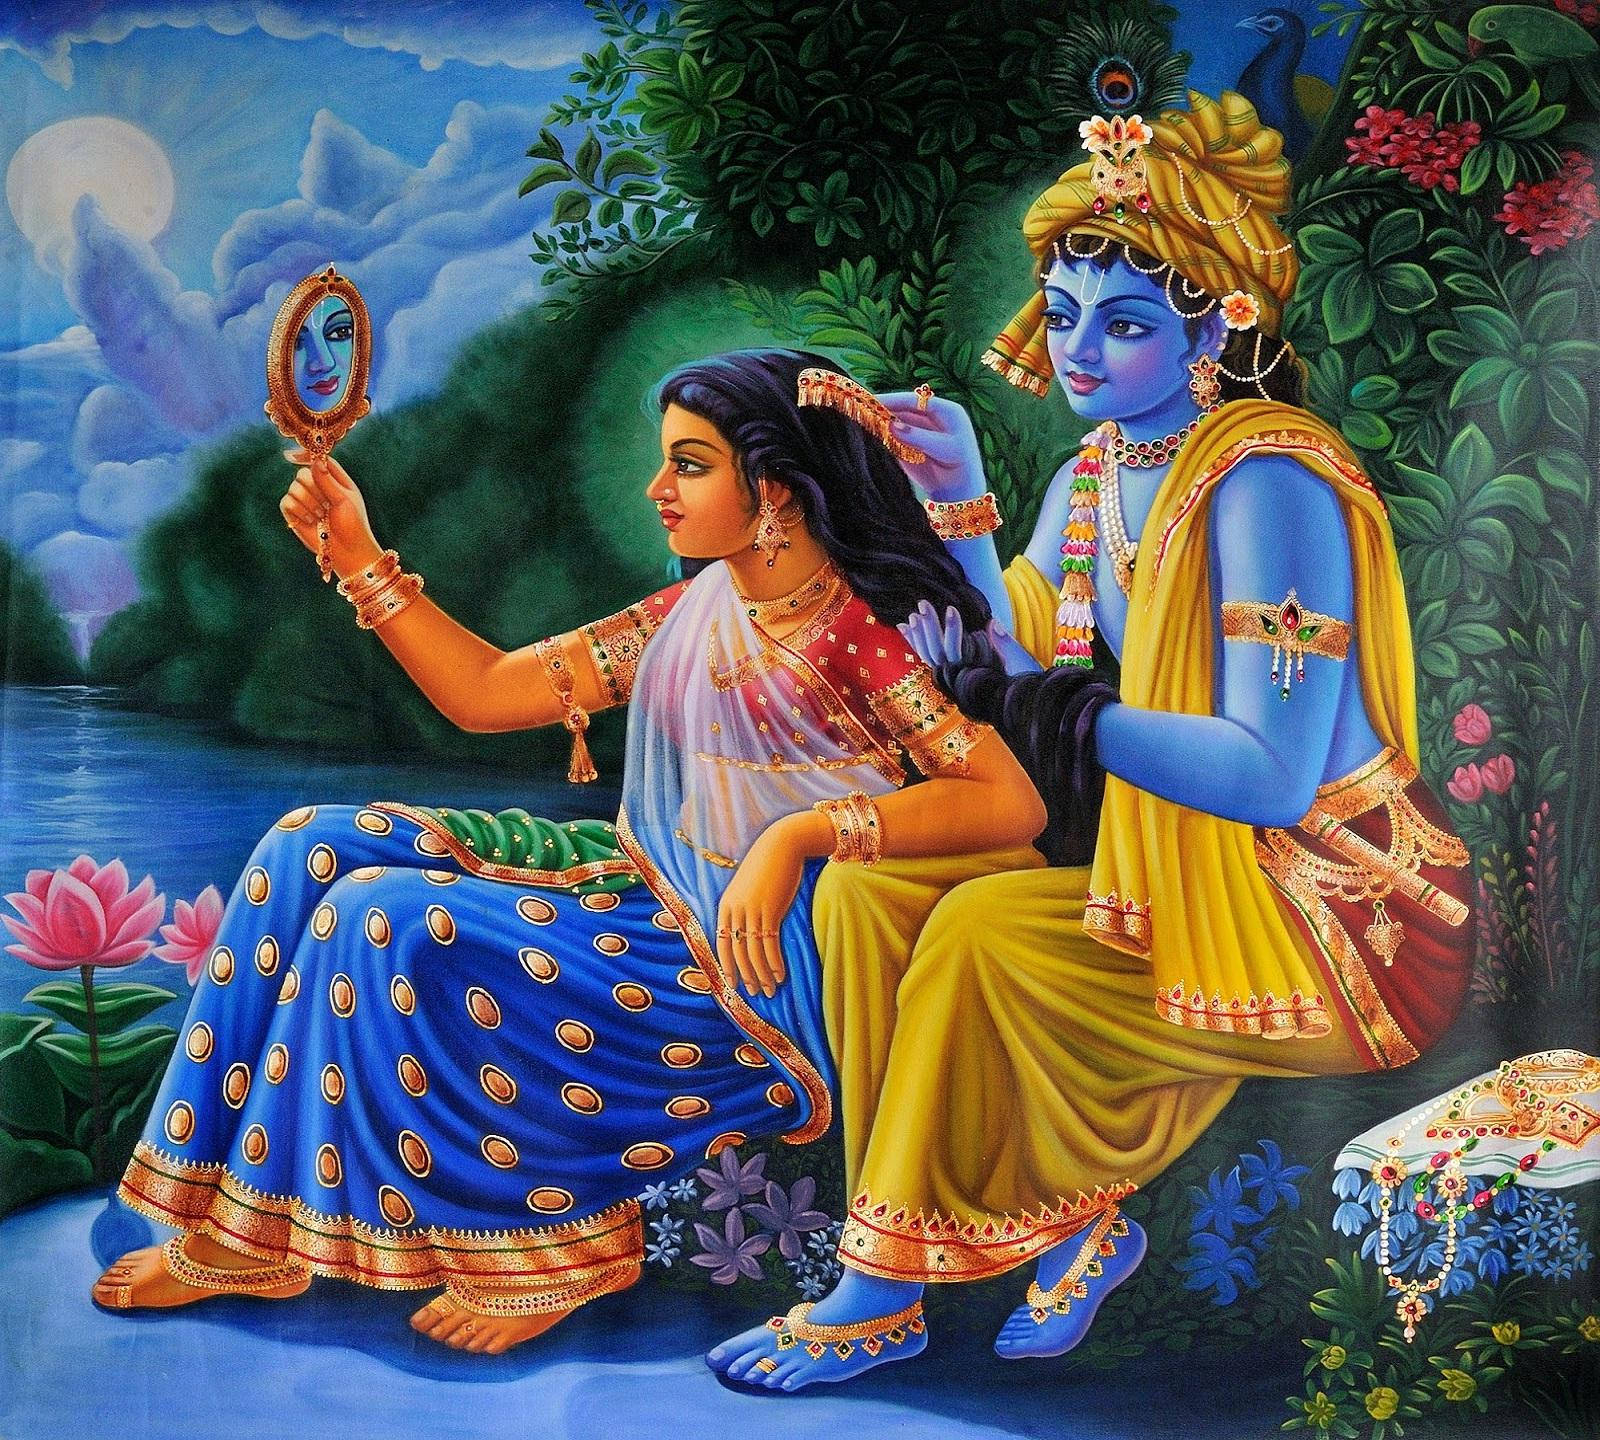 Download Colorful Art Of Radha And Krishna Desktop Wallpaper | Wallpapers .com